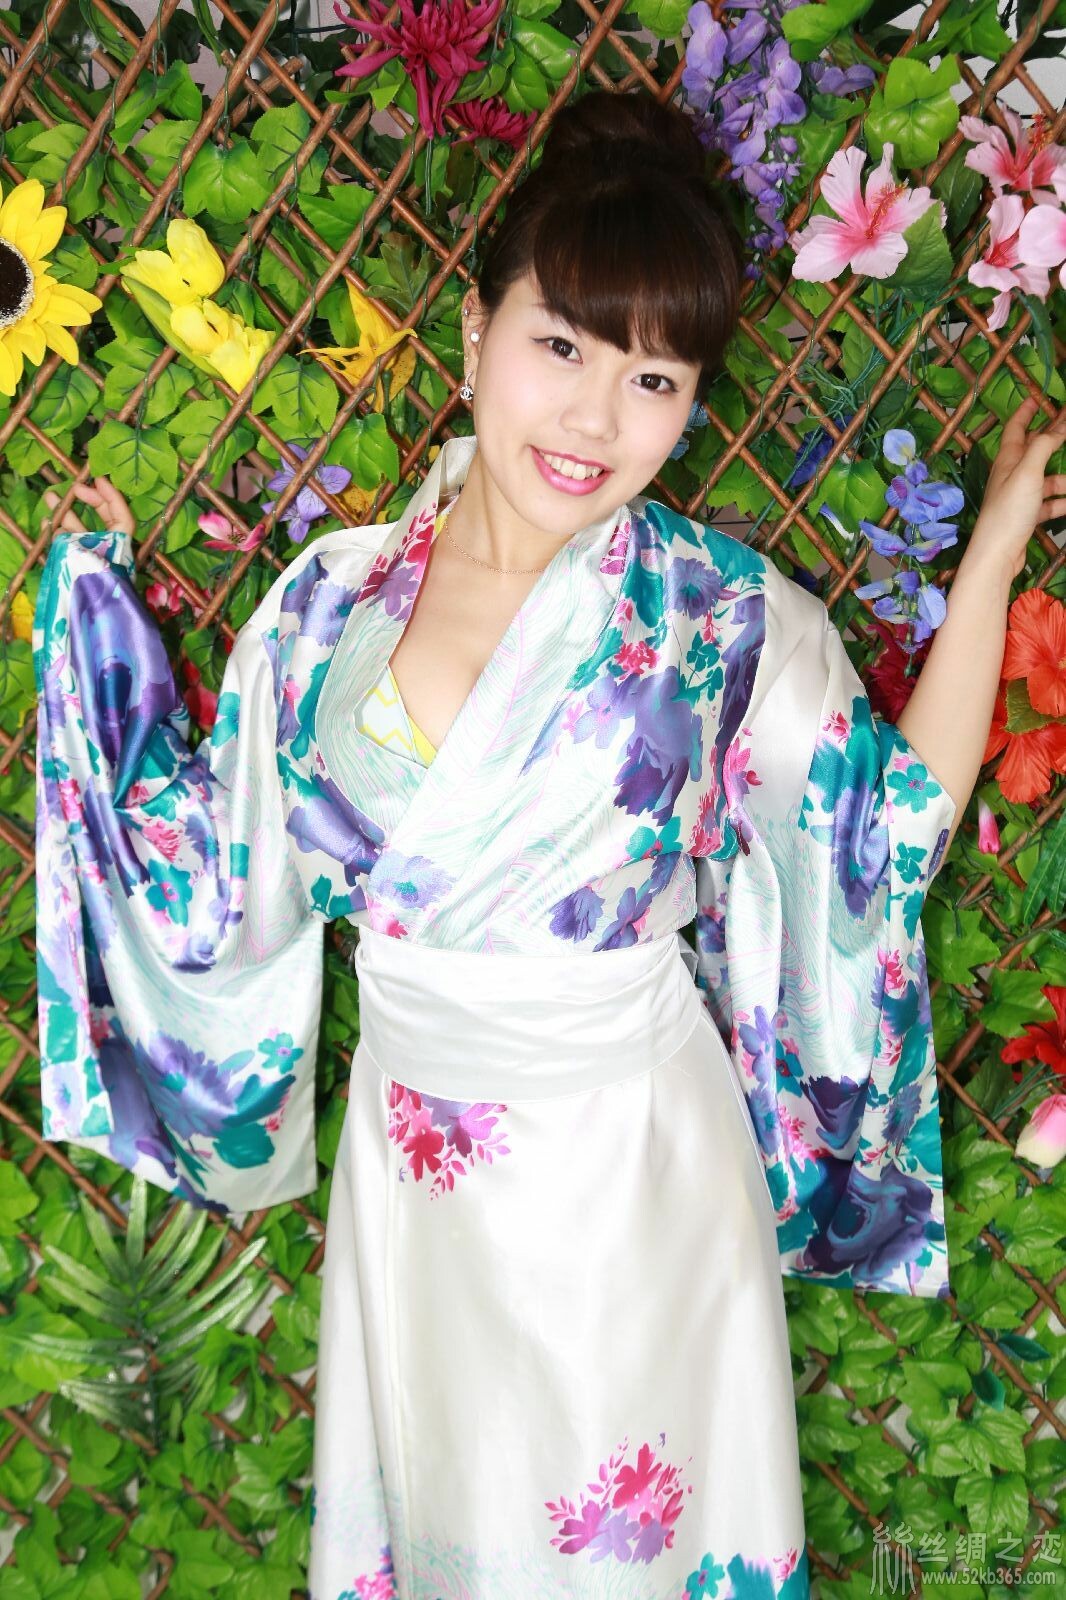 52kb 丝绸和服 seina-kimono-29.jpg  丝绸物品爱好者 234106ensynetntz6f6qpj